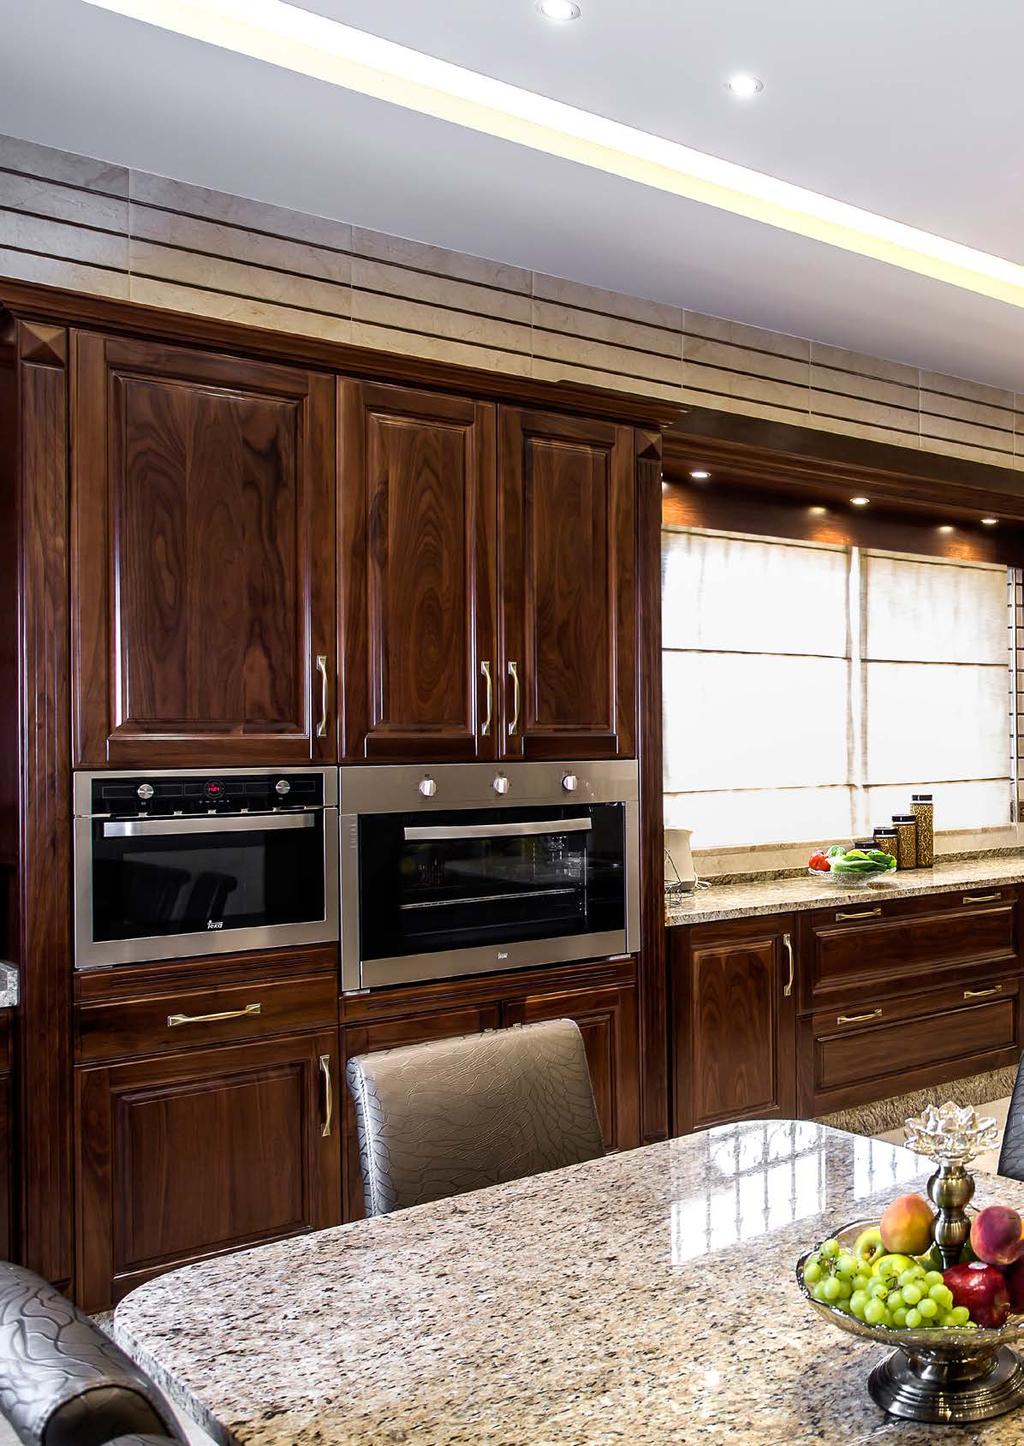 إن جمالية التصاميم وألوان الخشب تحتاج إلى إضاءة مناسبة تضفي راحة لك طوال اليوم على خالف باقي الغرف في المنزل فإن المطبخ بحاجة إلى إضاءة على الخزائن السفلية تسطع مباشرة على السطح العلوي.